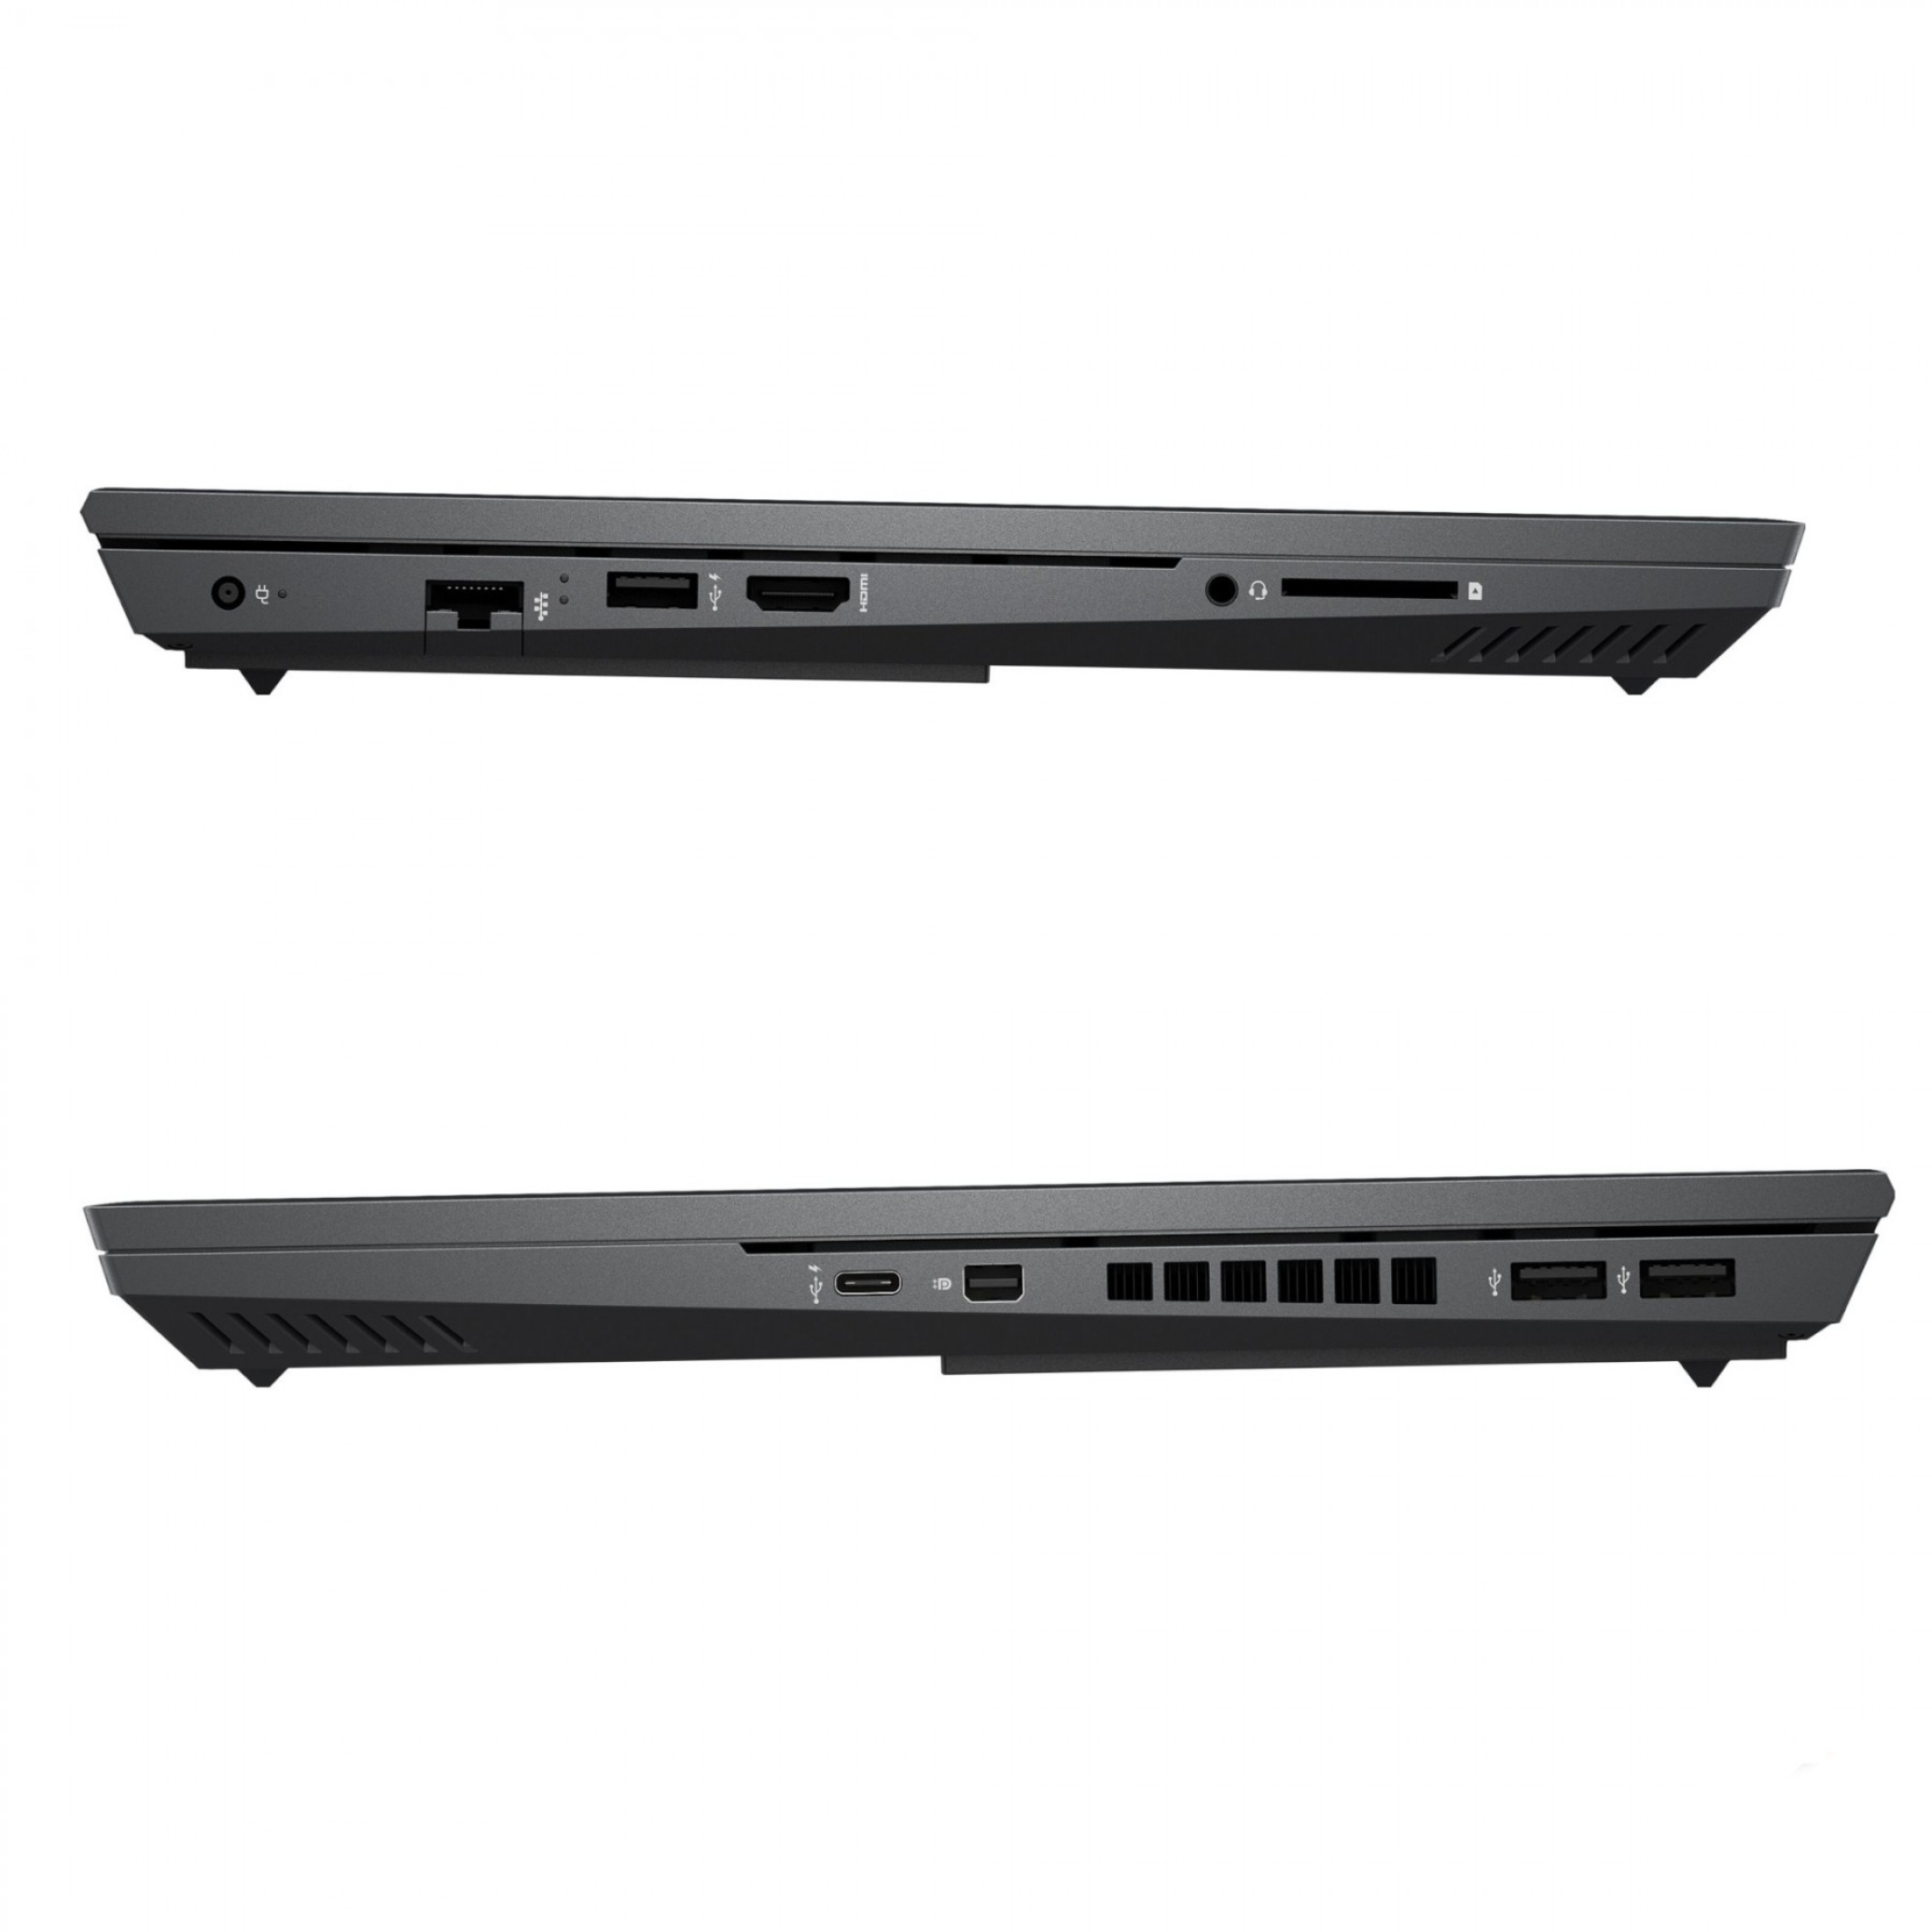  قیمت لپ تاپ HP OMEN 15-EK0013DX - i7 10750H | لاکچری لپ تاپ 